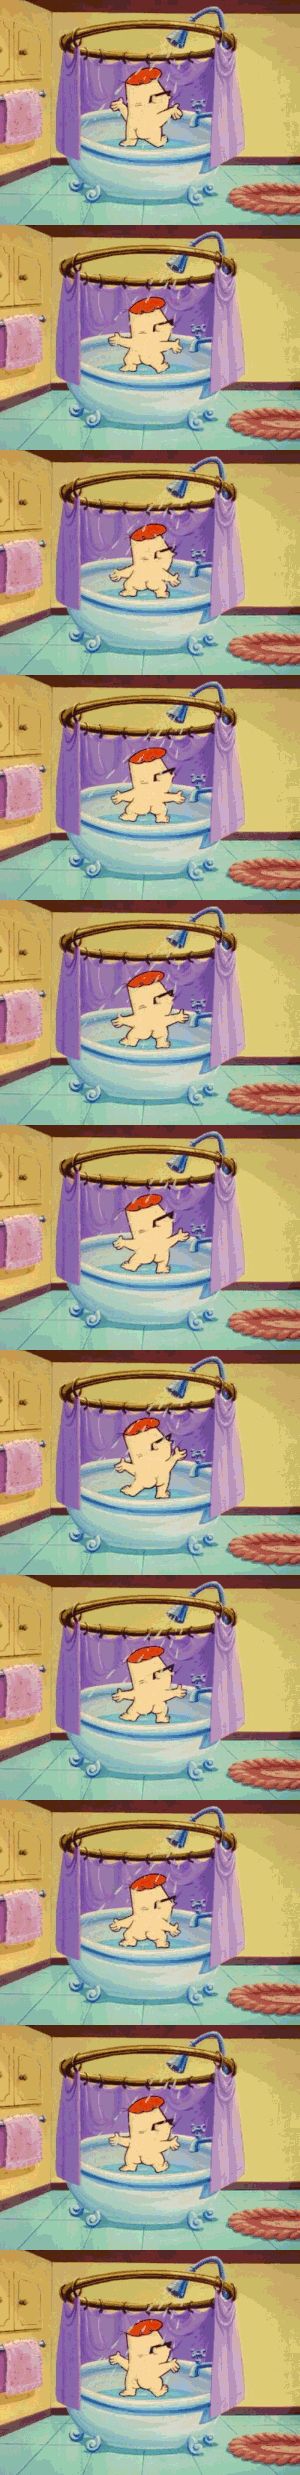 Dexter pegándose un baño